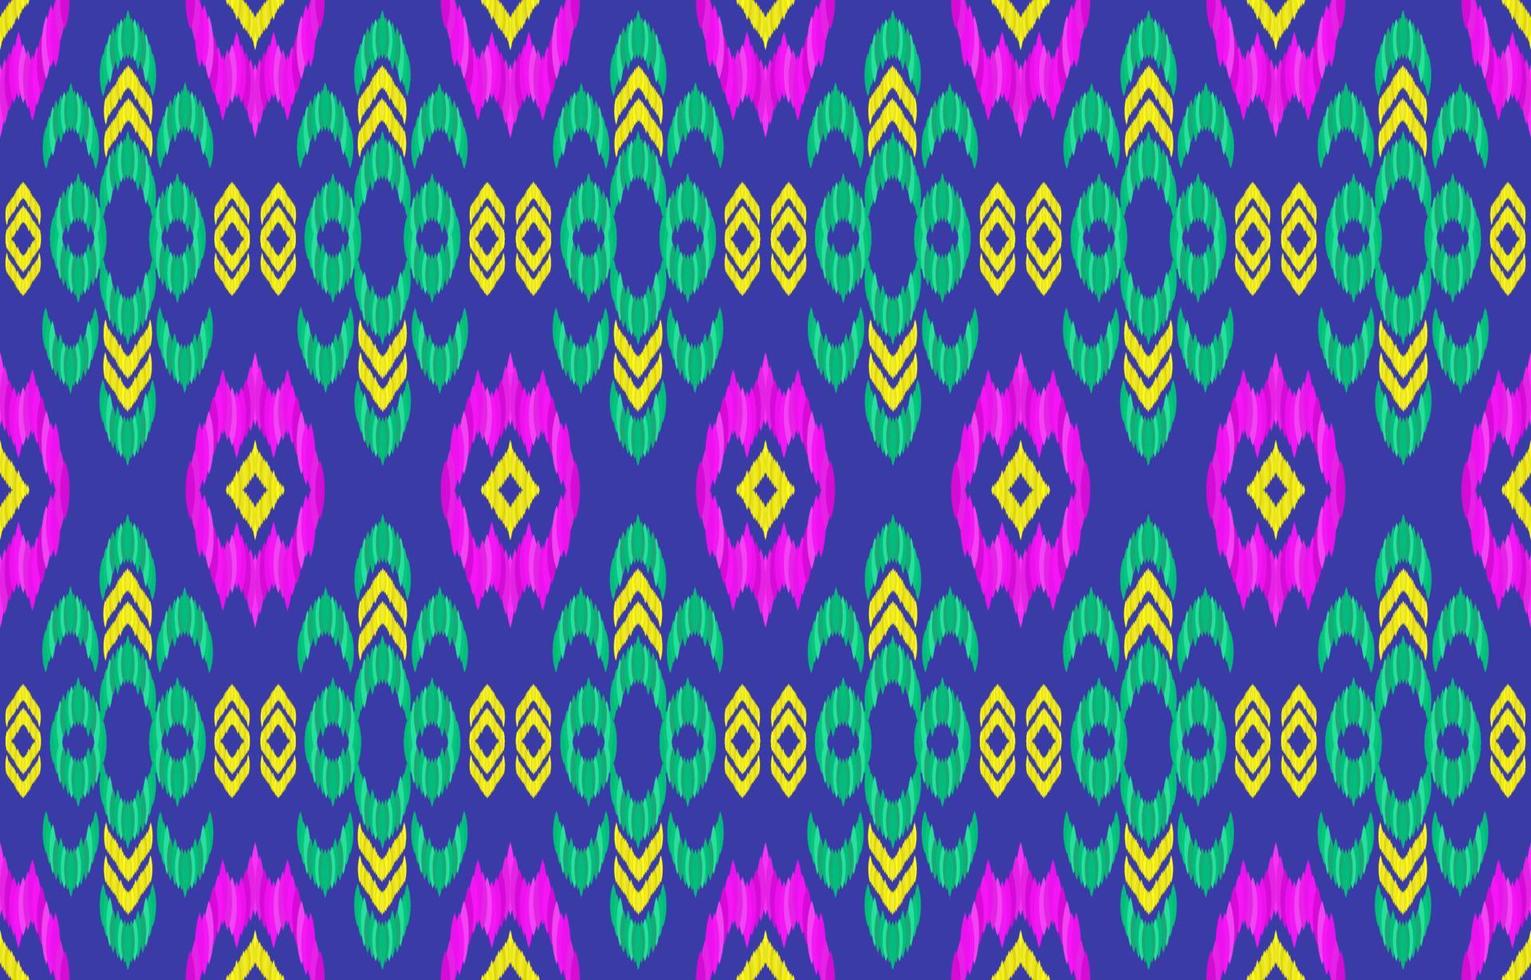 motif de tissu ethnique ikat. style aztèque navajo indien rétro géométrique tribal vintage. conception pour décorer la toile de fond, la texture sans fin, le tissu, les vêtements, le textile, la broderie, le tapis. illustration vectorielle. vecteur